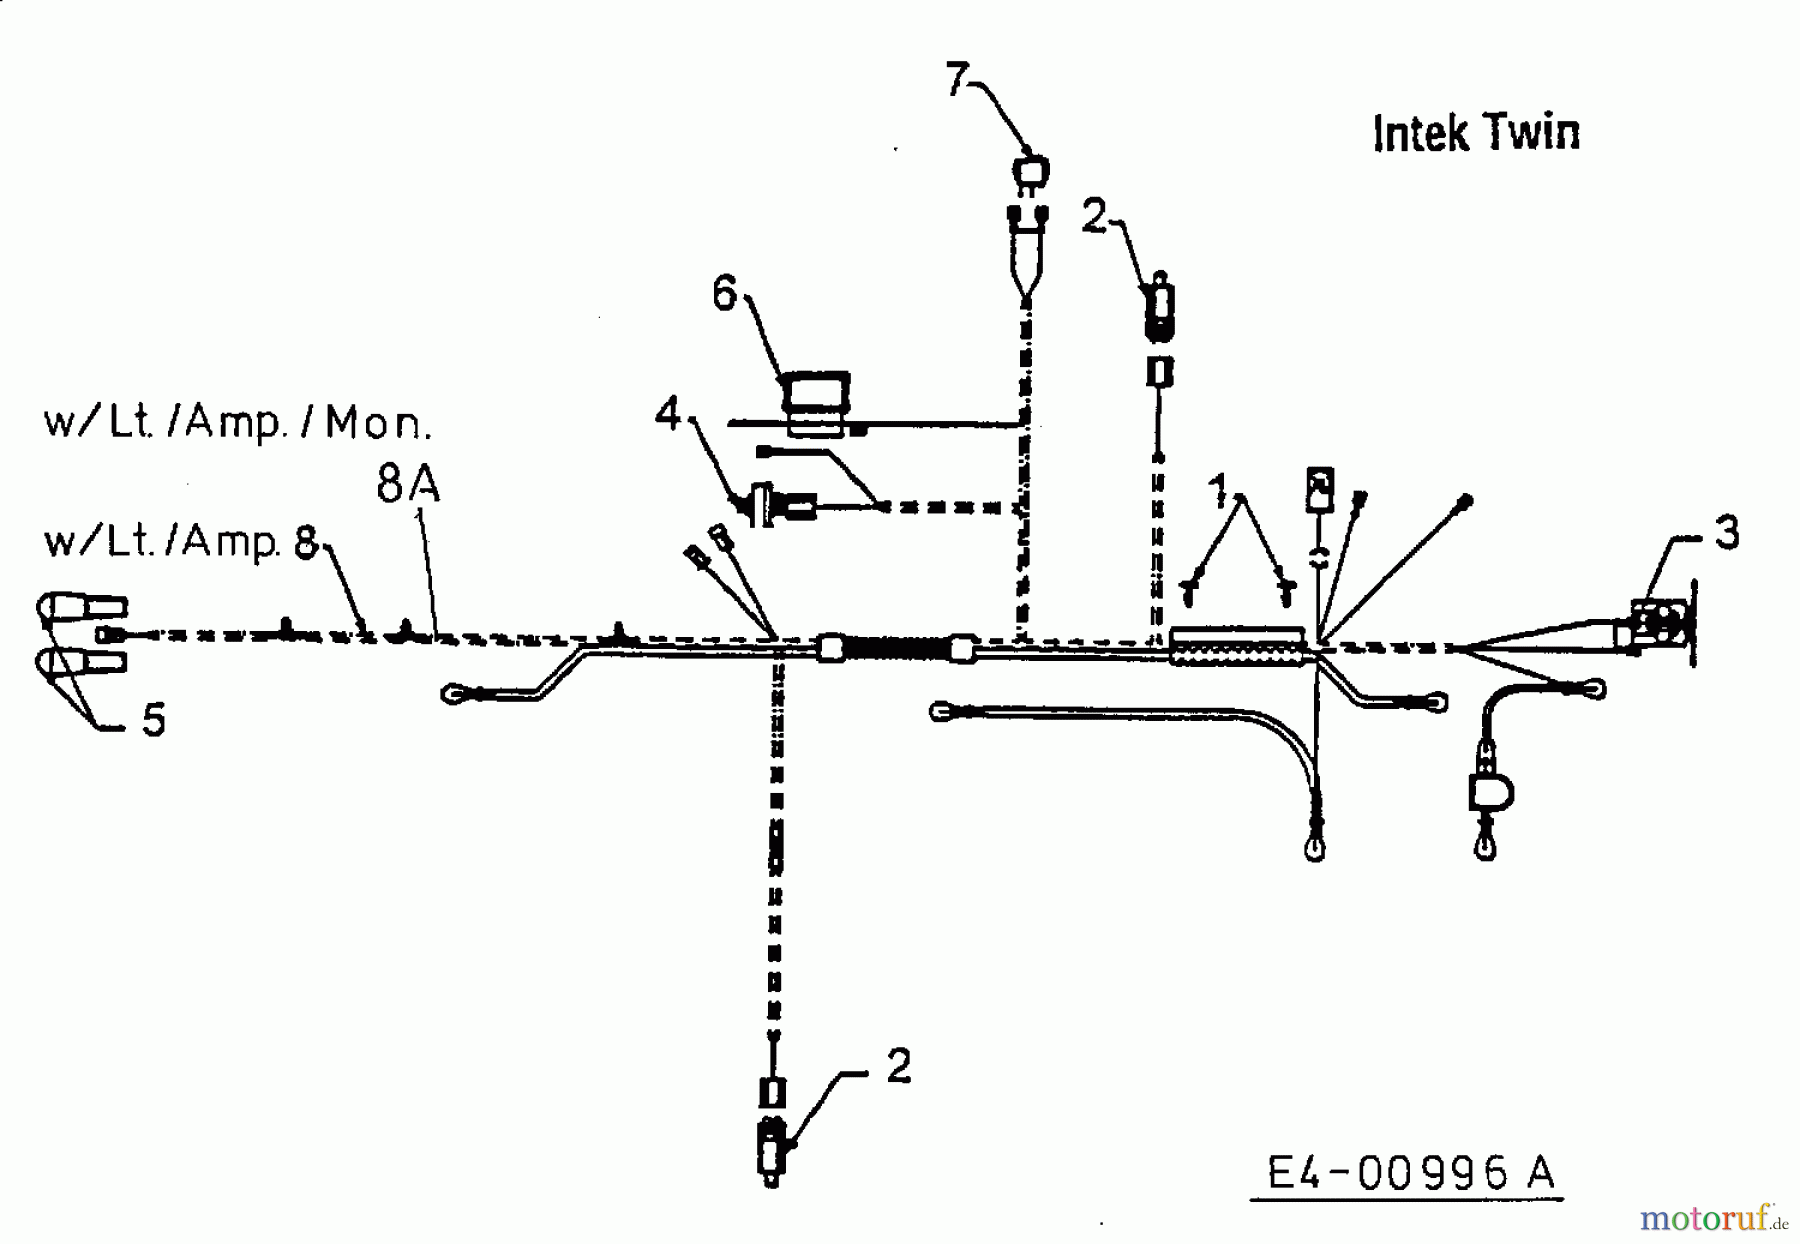  MTD Tracteurs de pelouse H 125 13AH690F678  (1998) Plan électrique  Intek Twin